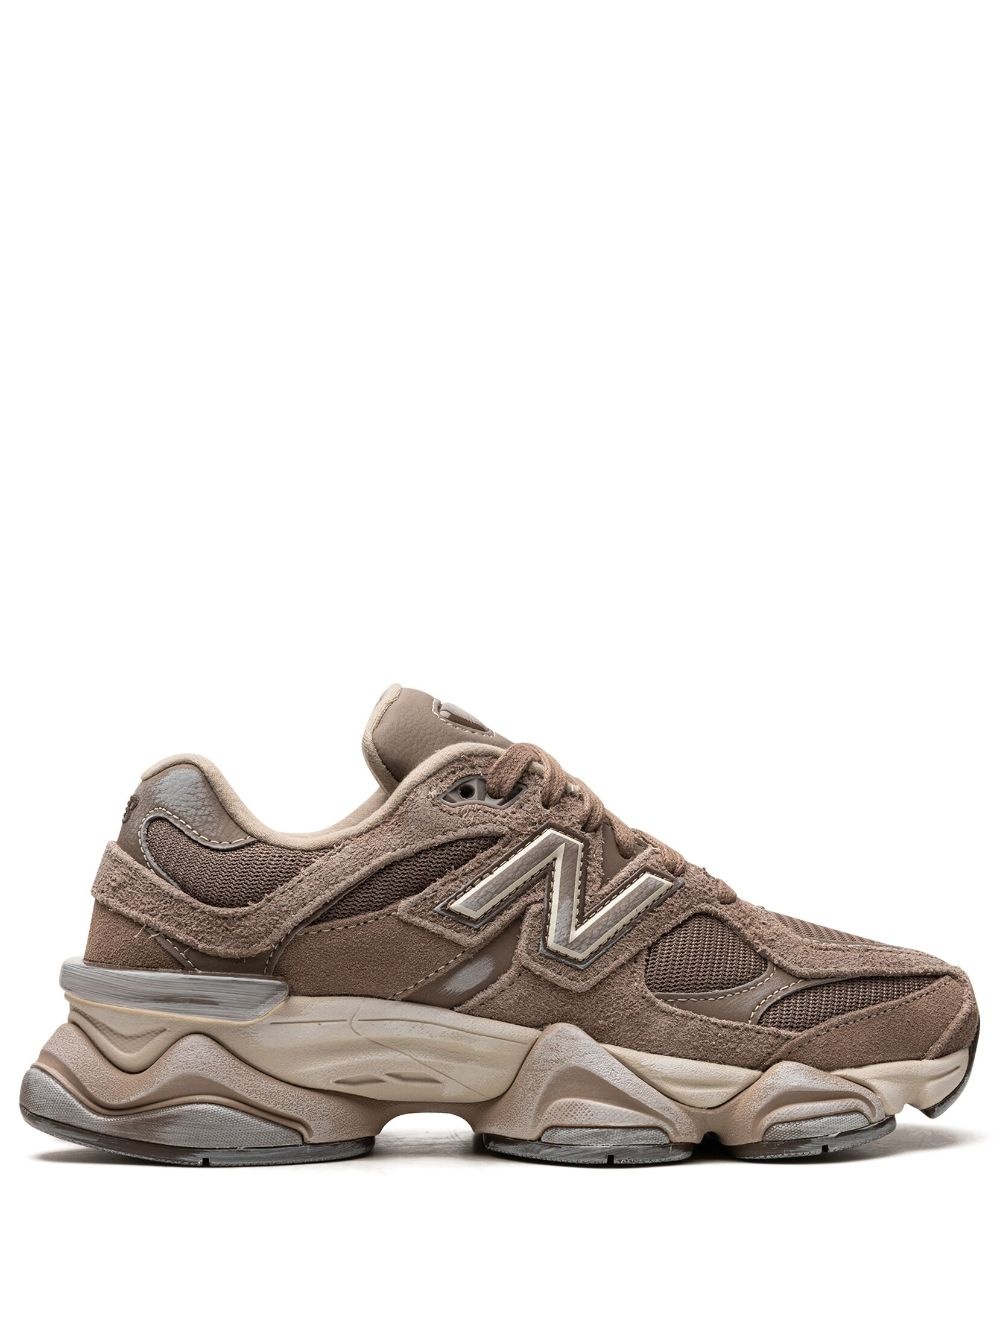 9060 "Mushroom Brown" sneakers - 1